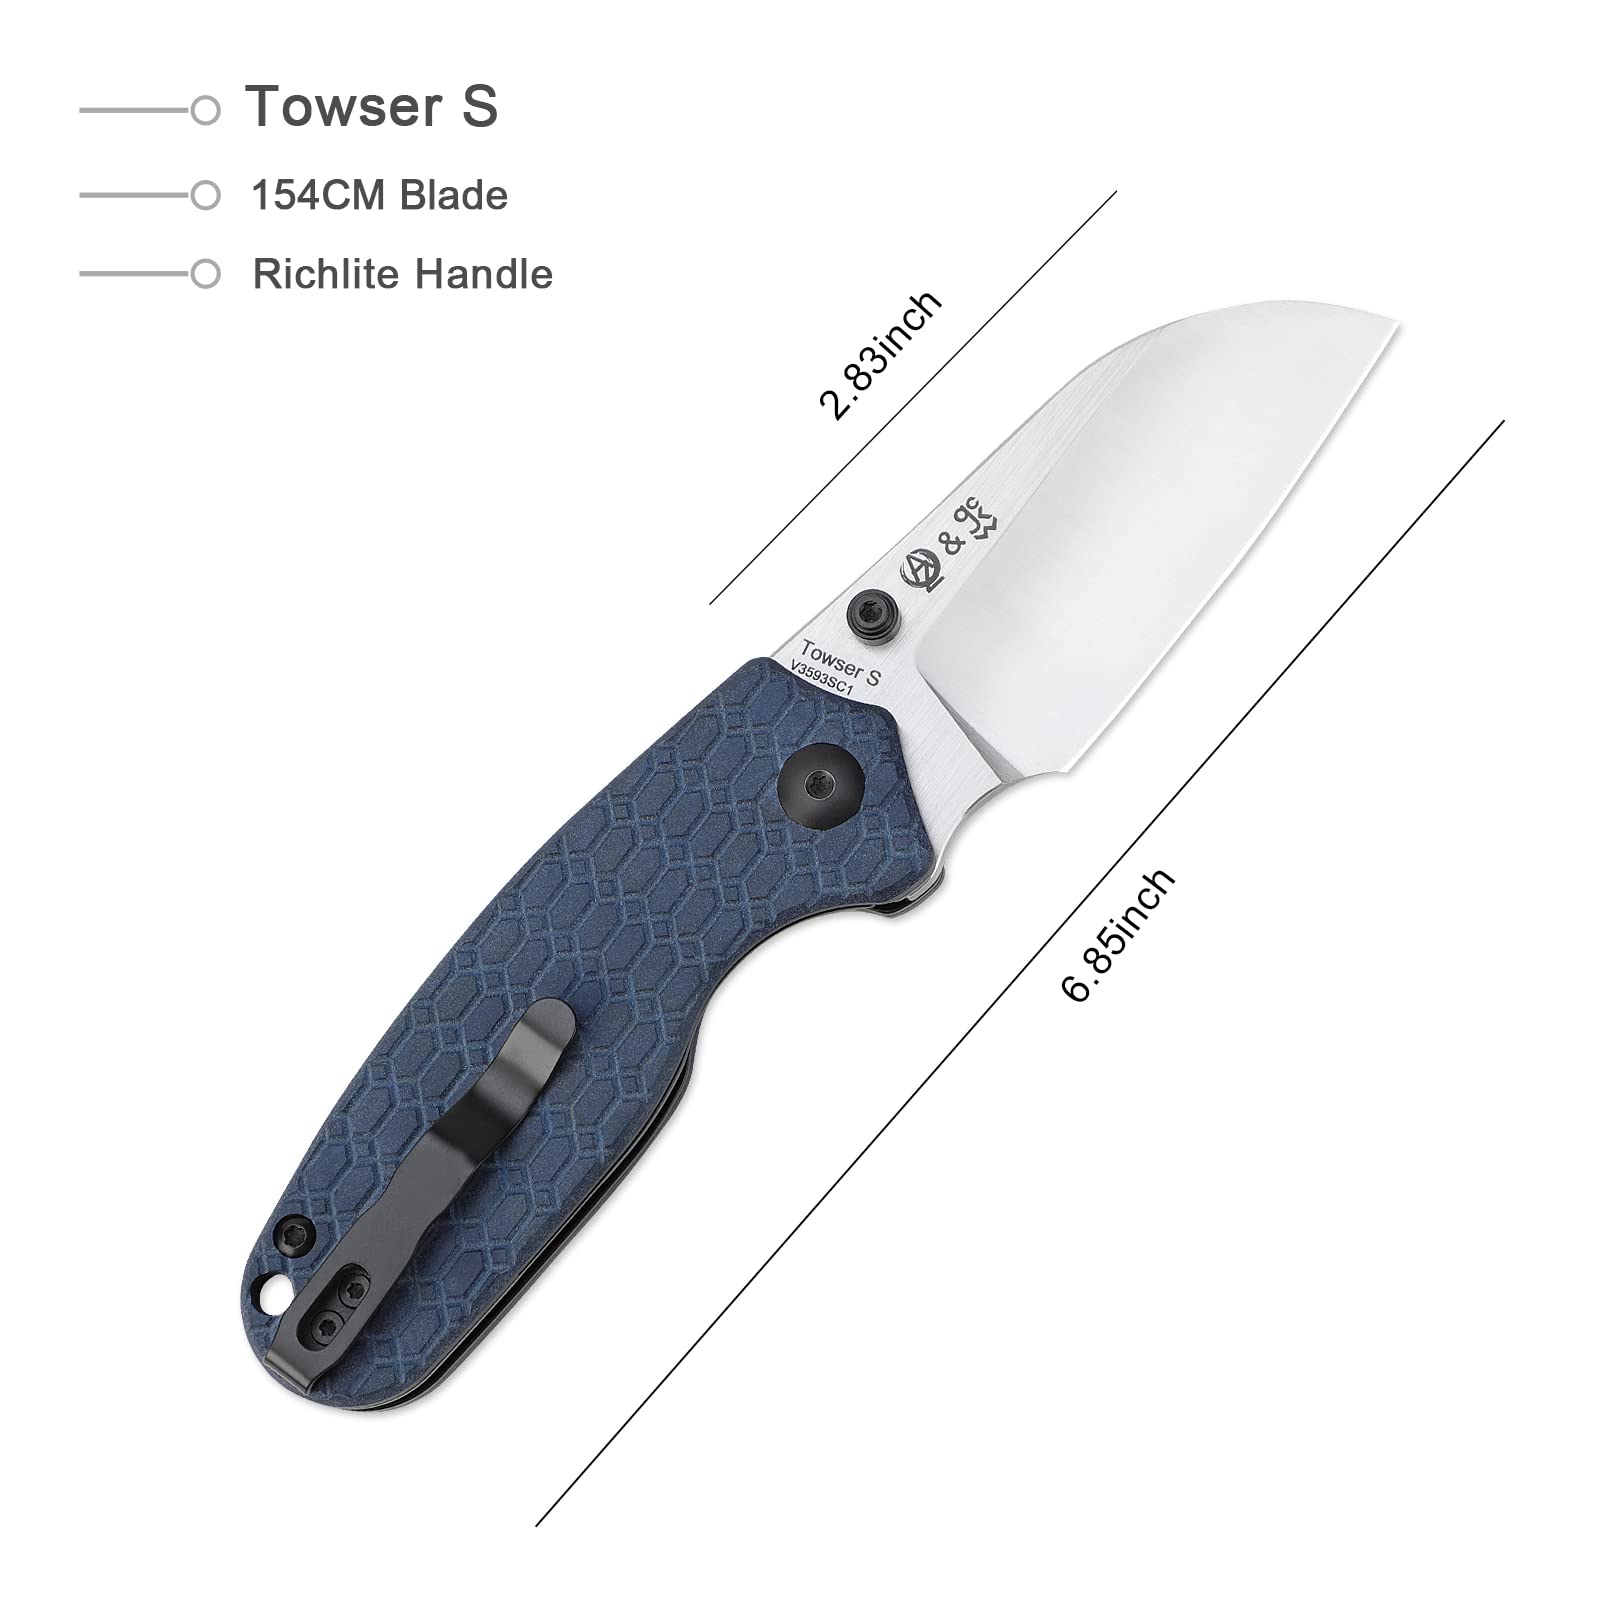 Kizer Towser S Folding Knife 2.83 Inches 154CM Steel Blue Richlite Handle Pocket Knife Camping Tools V3593SC1